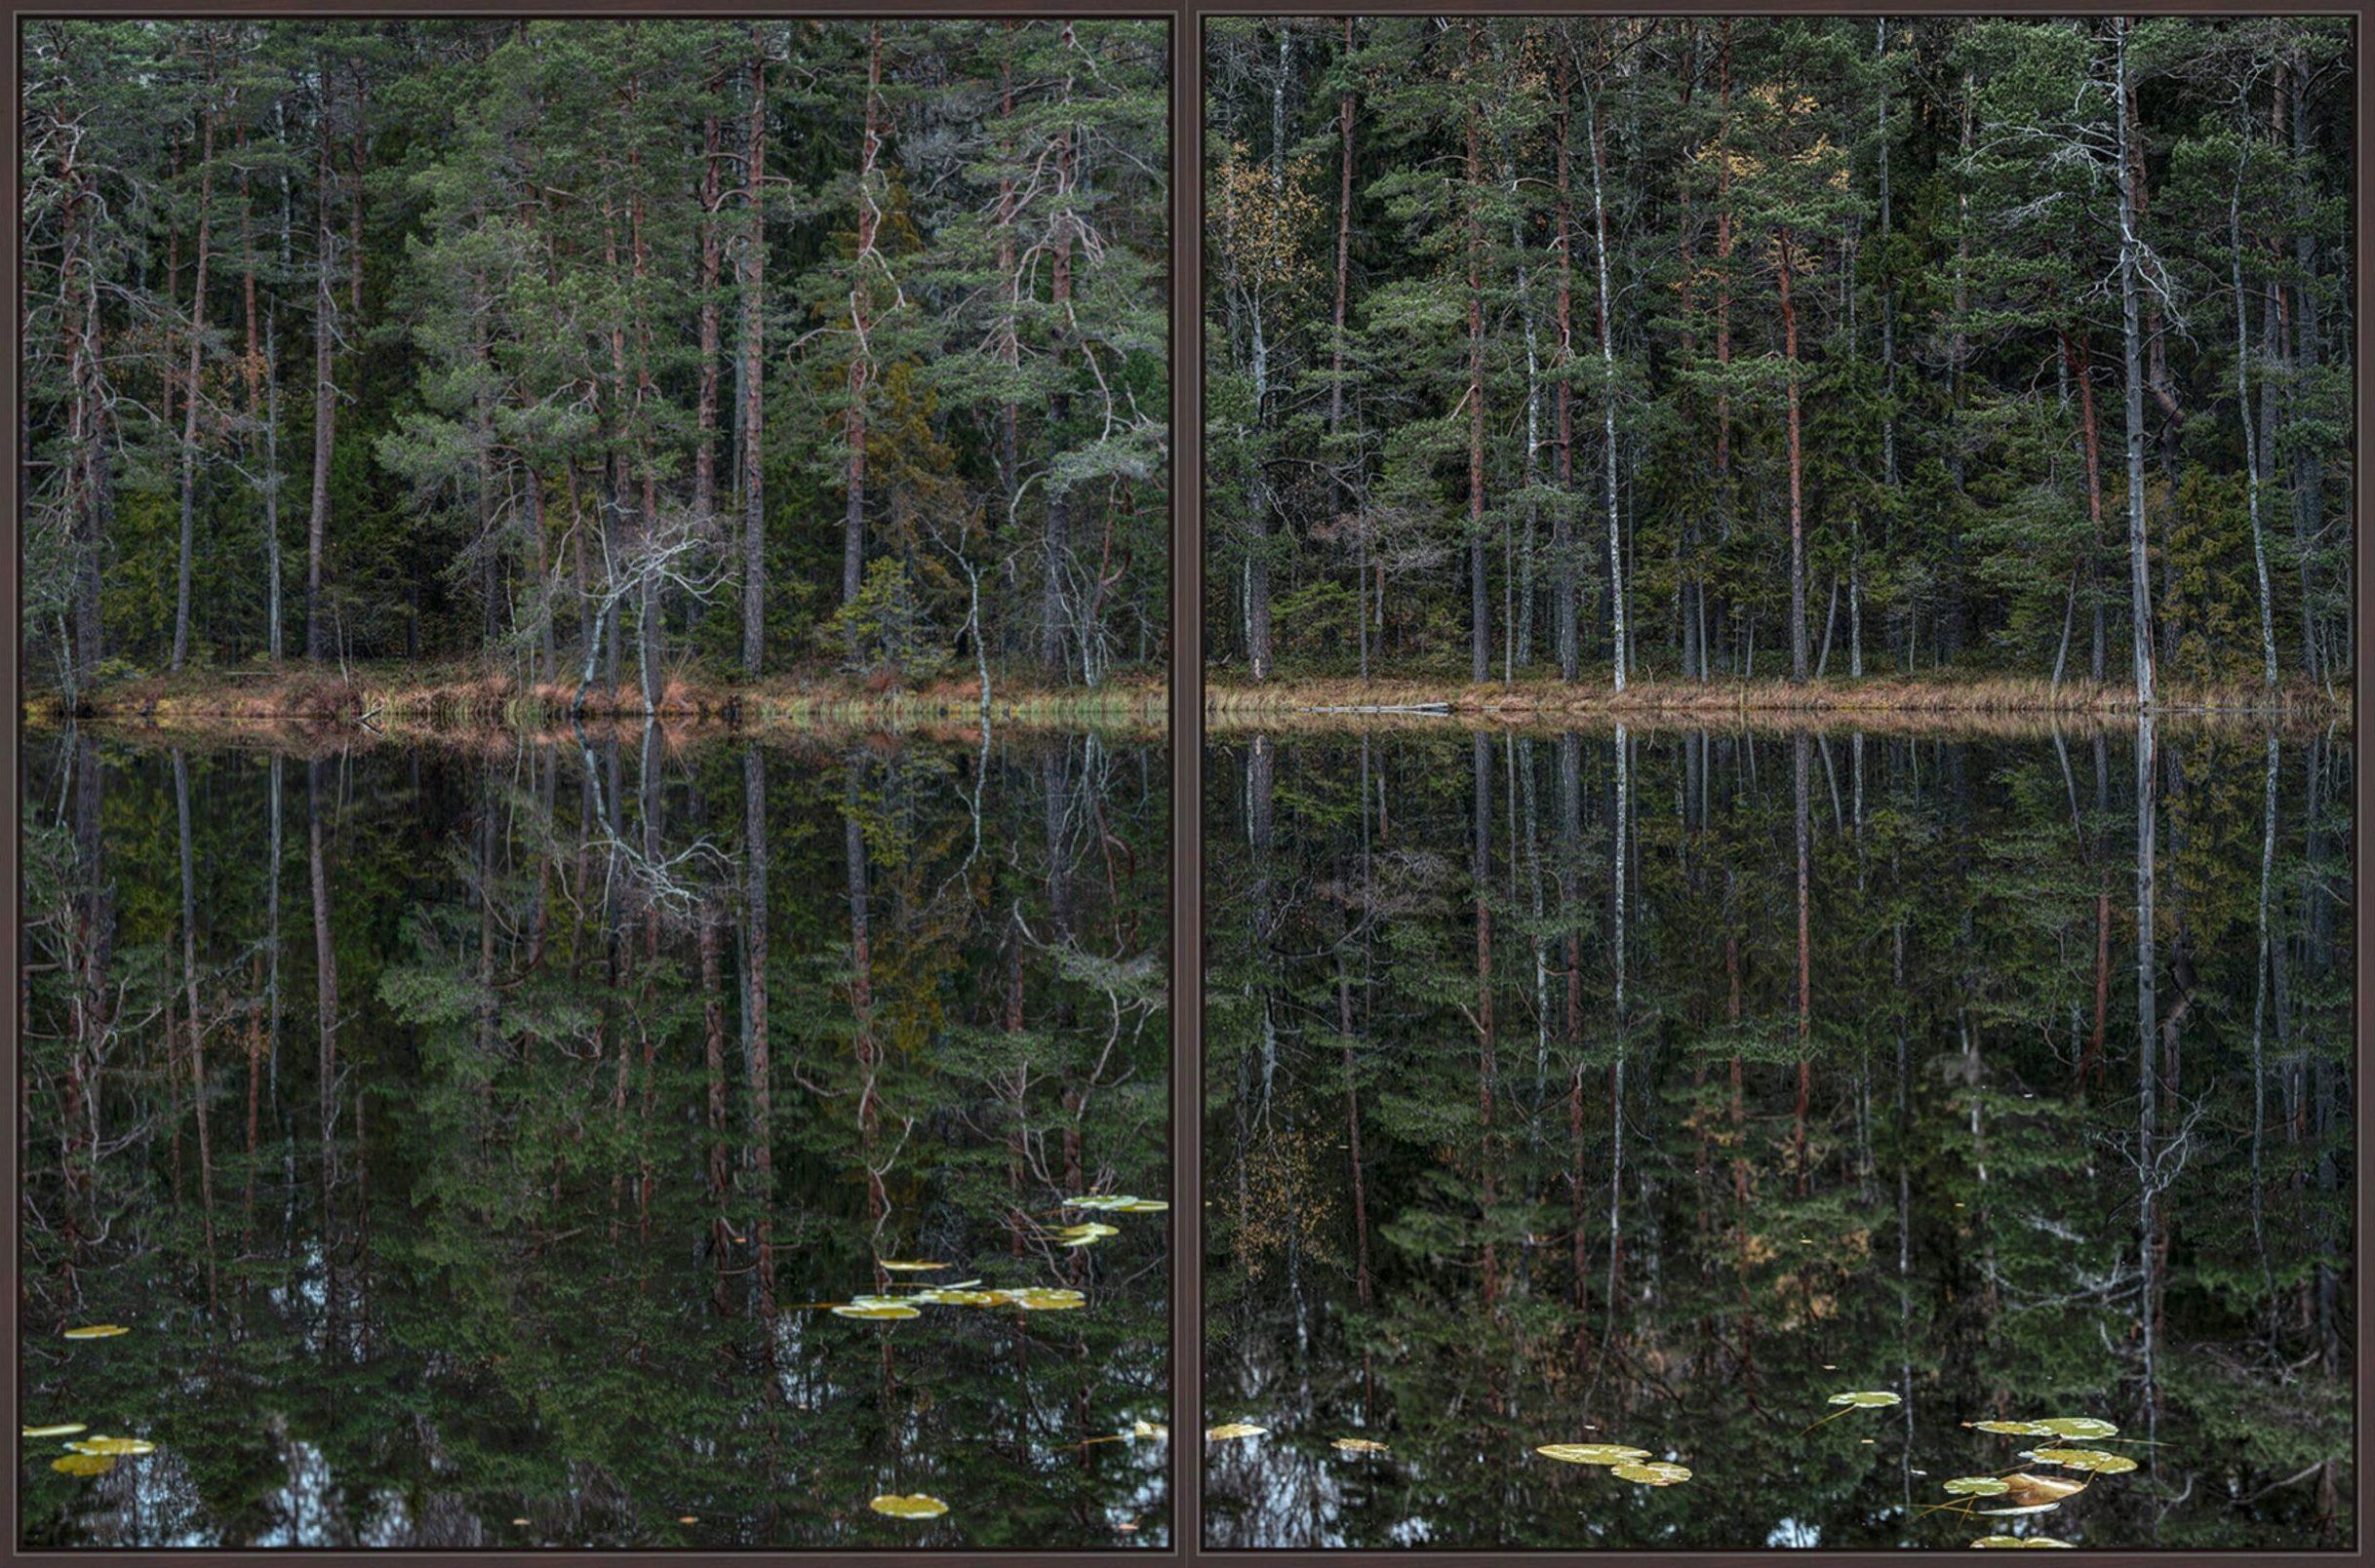 Deep Mirroring Forest 011 ist eine Fotografie des deutschen zeitgenössischen Künstlers Bernhard Lang in limitierter Auflage. 

Dieses Foto wird nur als ungerahmter Abzug verkauft. Sie ist in 5 Größen erhältlich:
*60 × 90 cm (23,6 × 35,4 in),